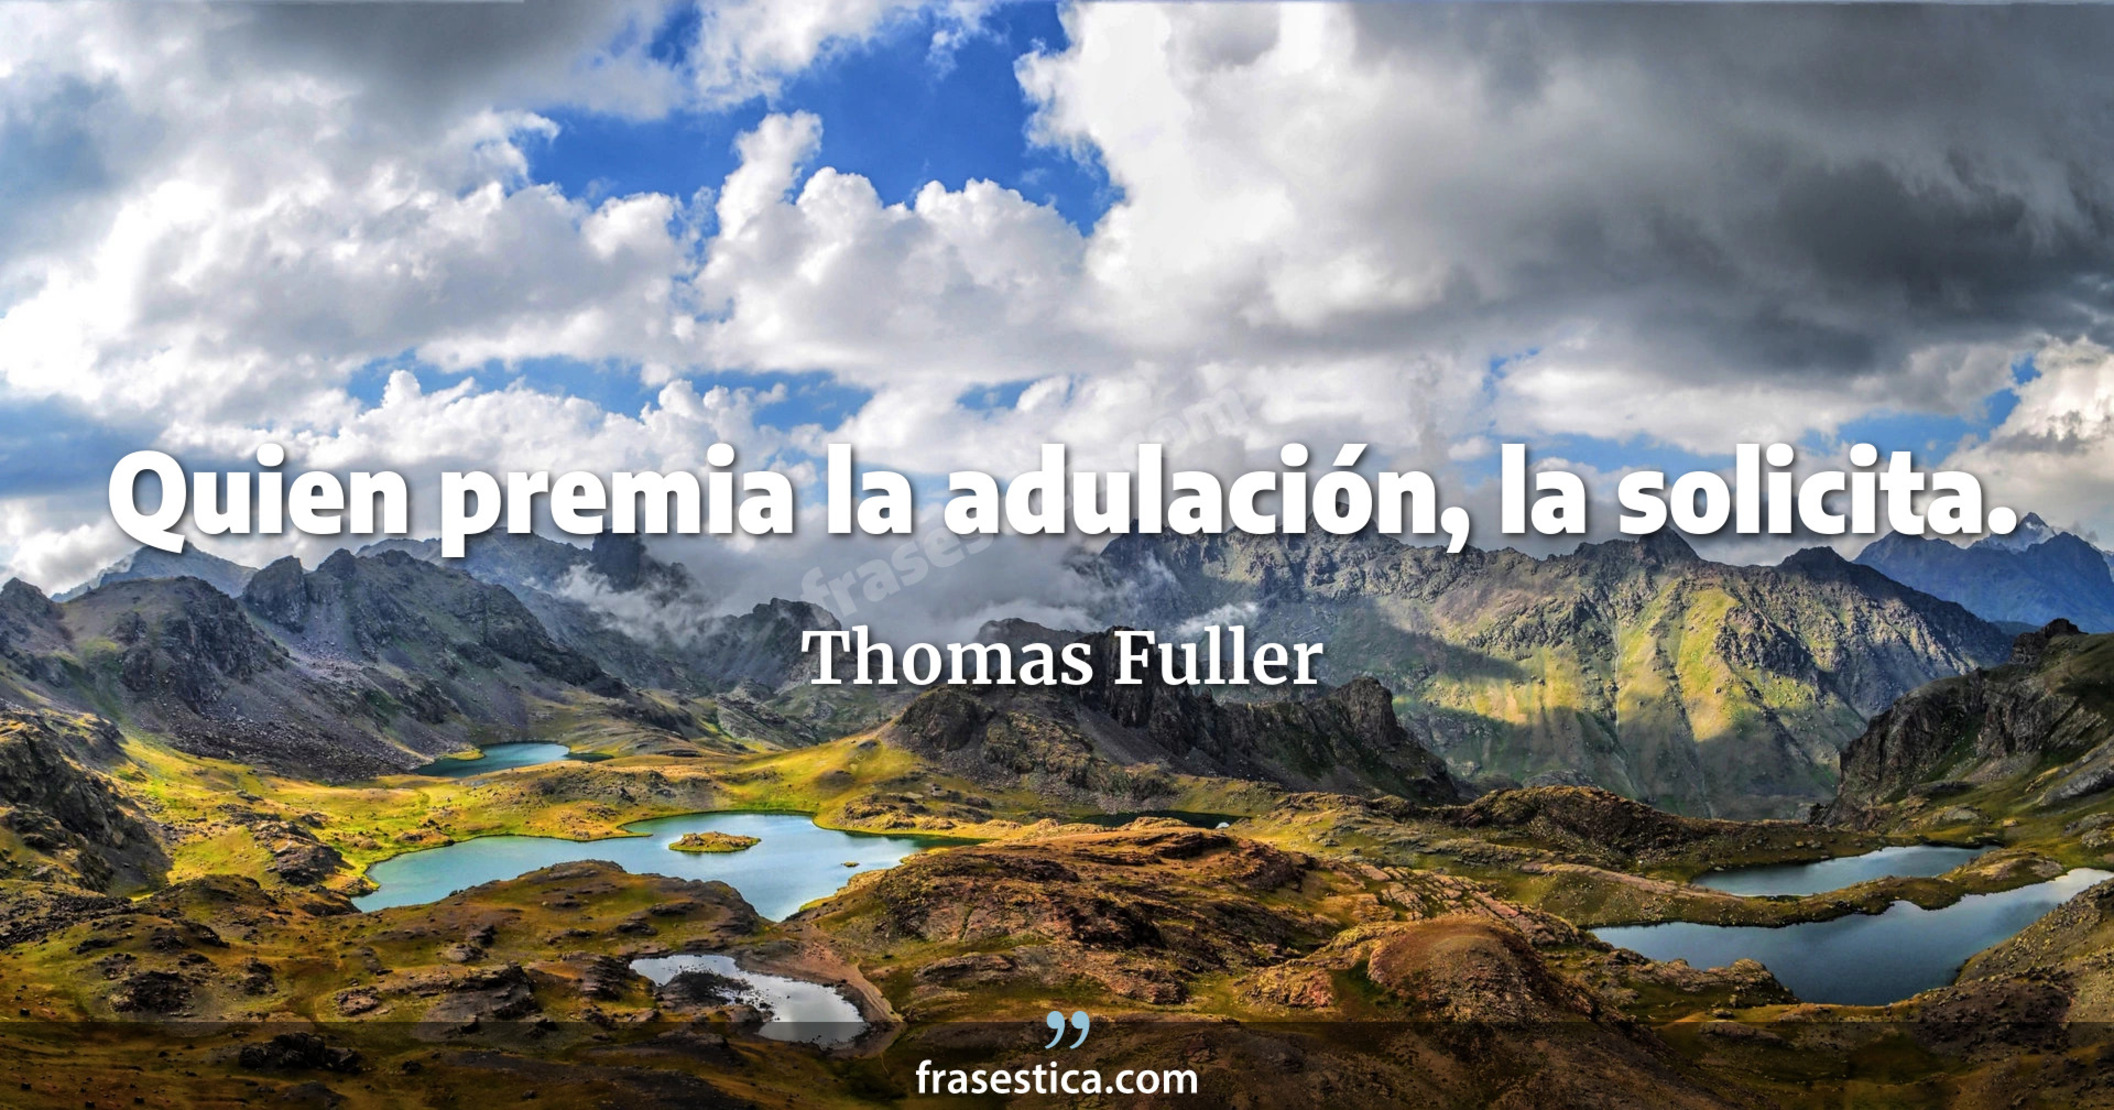 Quien premia la adulación, la solicita. - Thomas Fuller